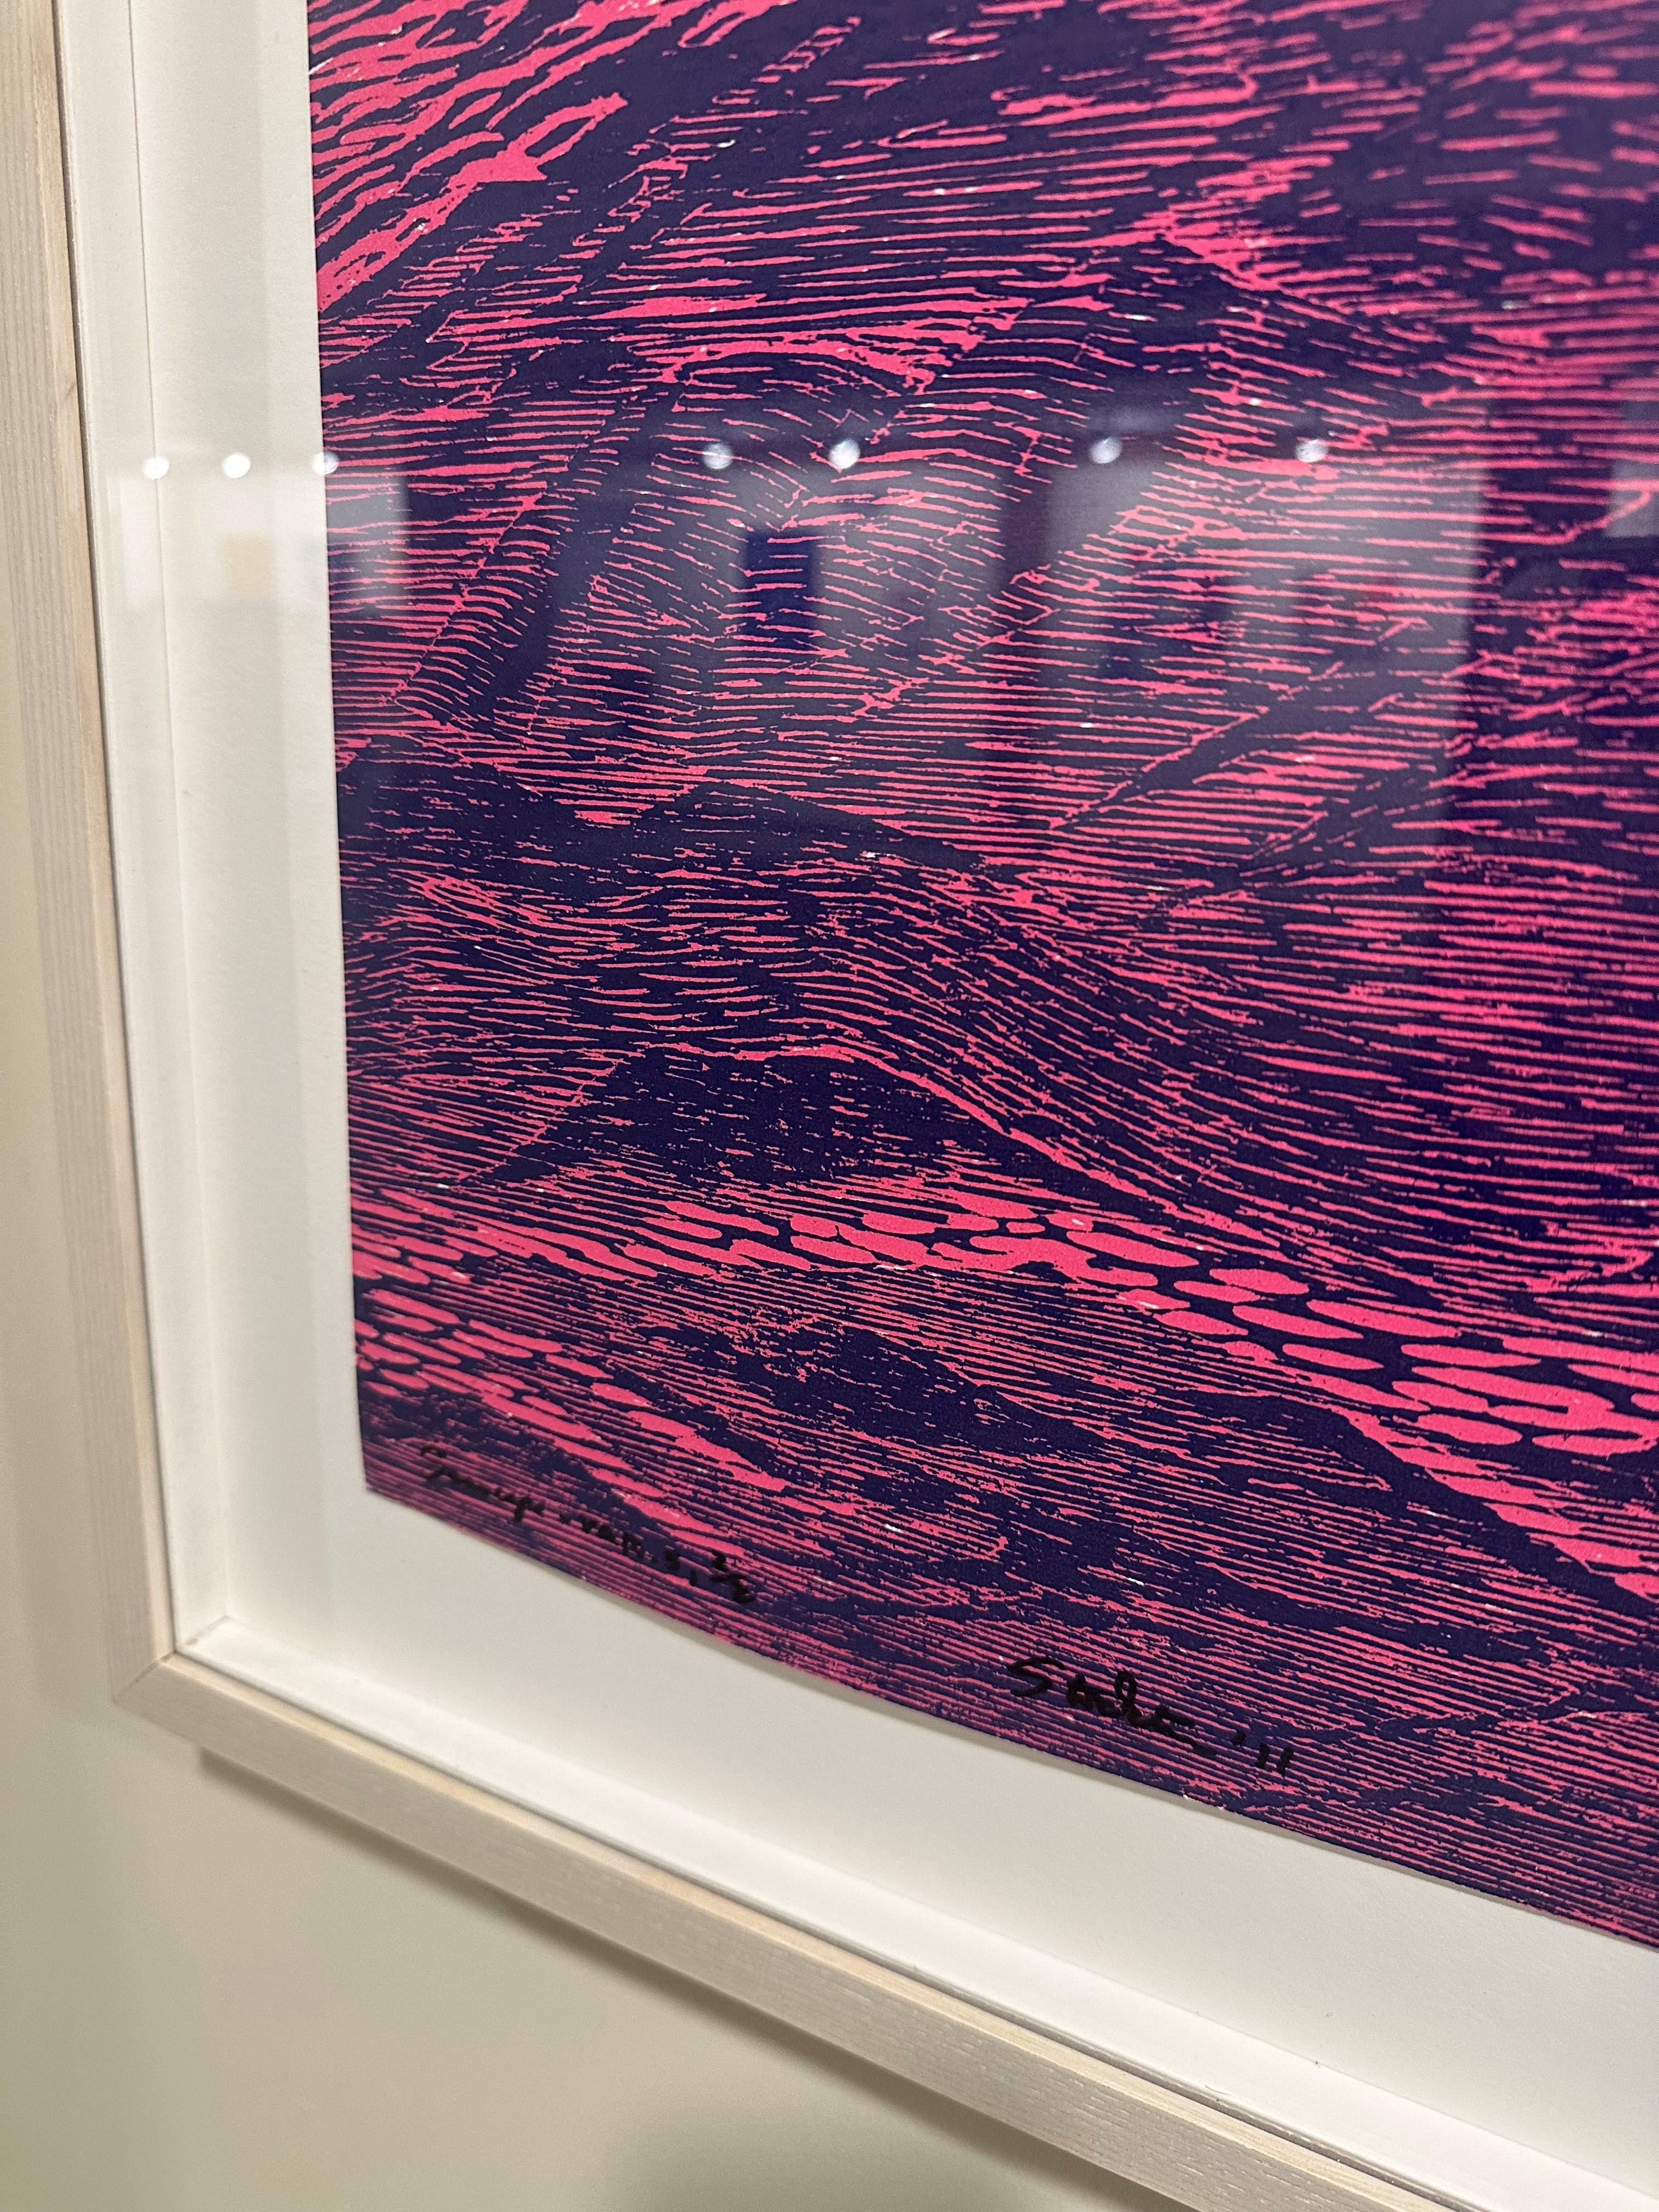 Cette gravure sur bois évoque la tranquillité des vagues de l'océan représentées en rose vif et en bleu cobalt foncé et profond, rappelant la tradition de l'imprimerie japonaise tout en étant distinctement contemporaine. 

Édition 2/2. Signé et